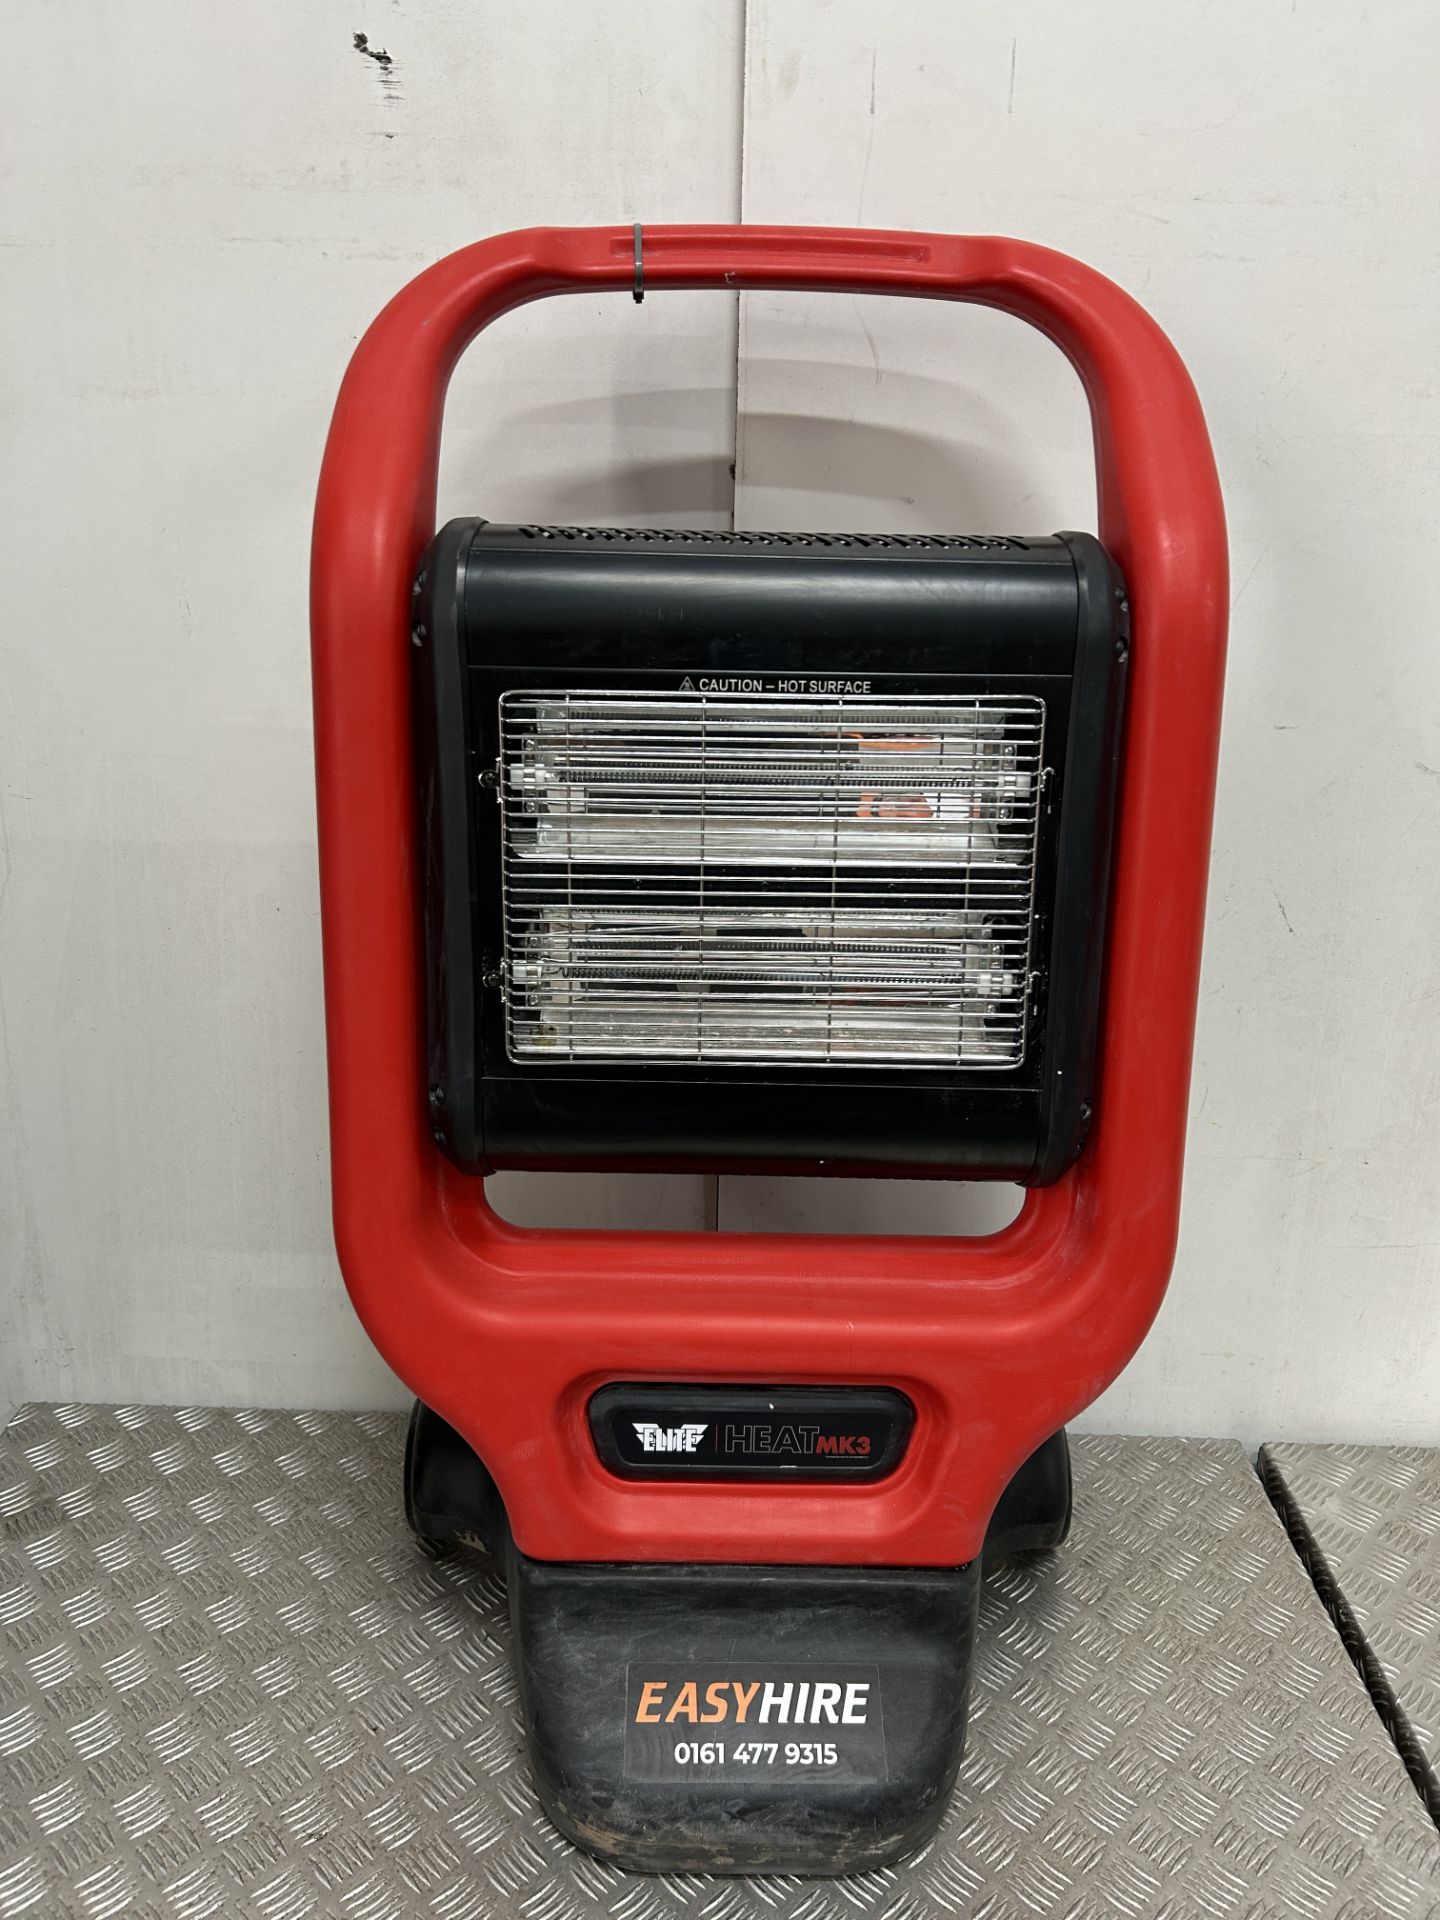 Elite Heat EH240MK3 Portable Halogen Infrared Heater